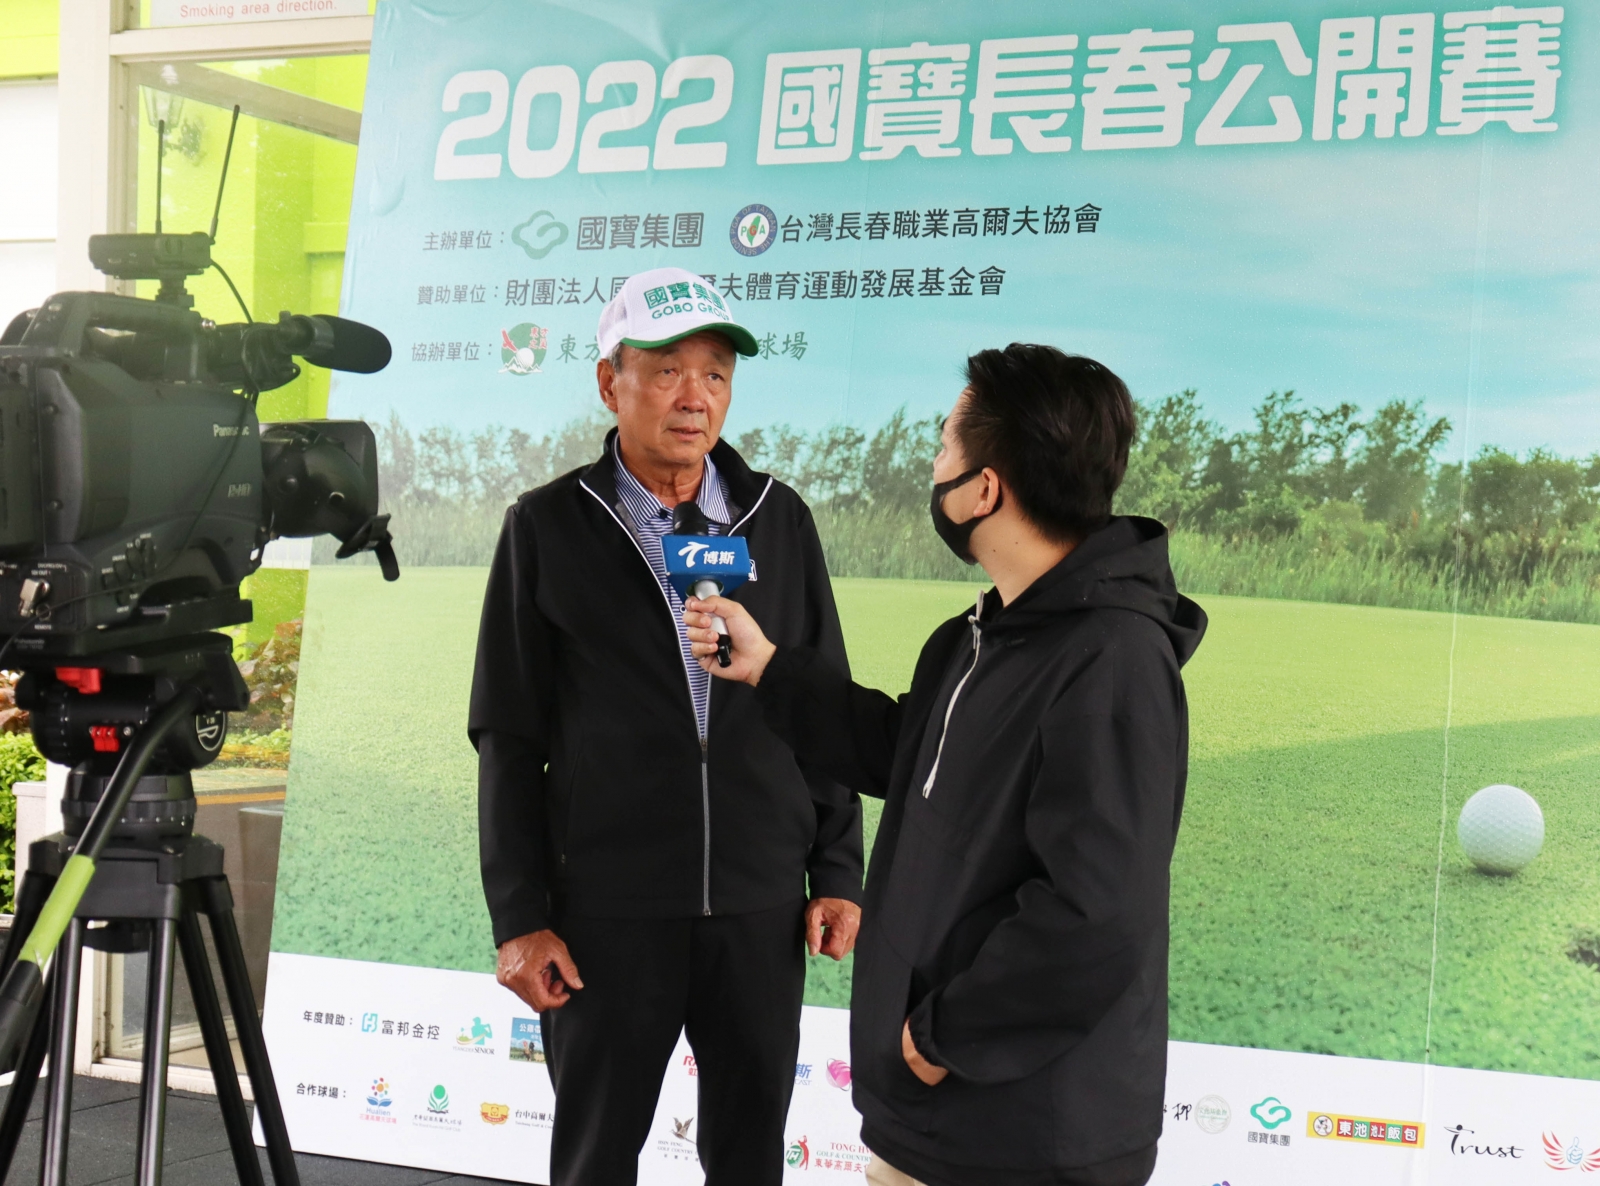 賽後冠軍陳志明接受台視台訪問。